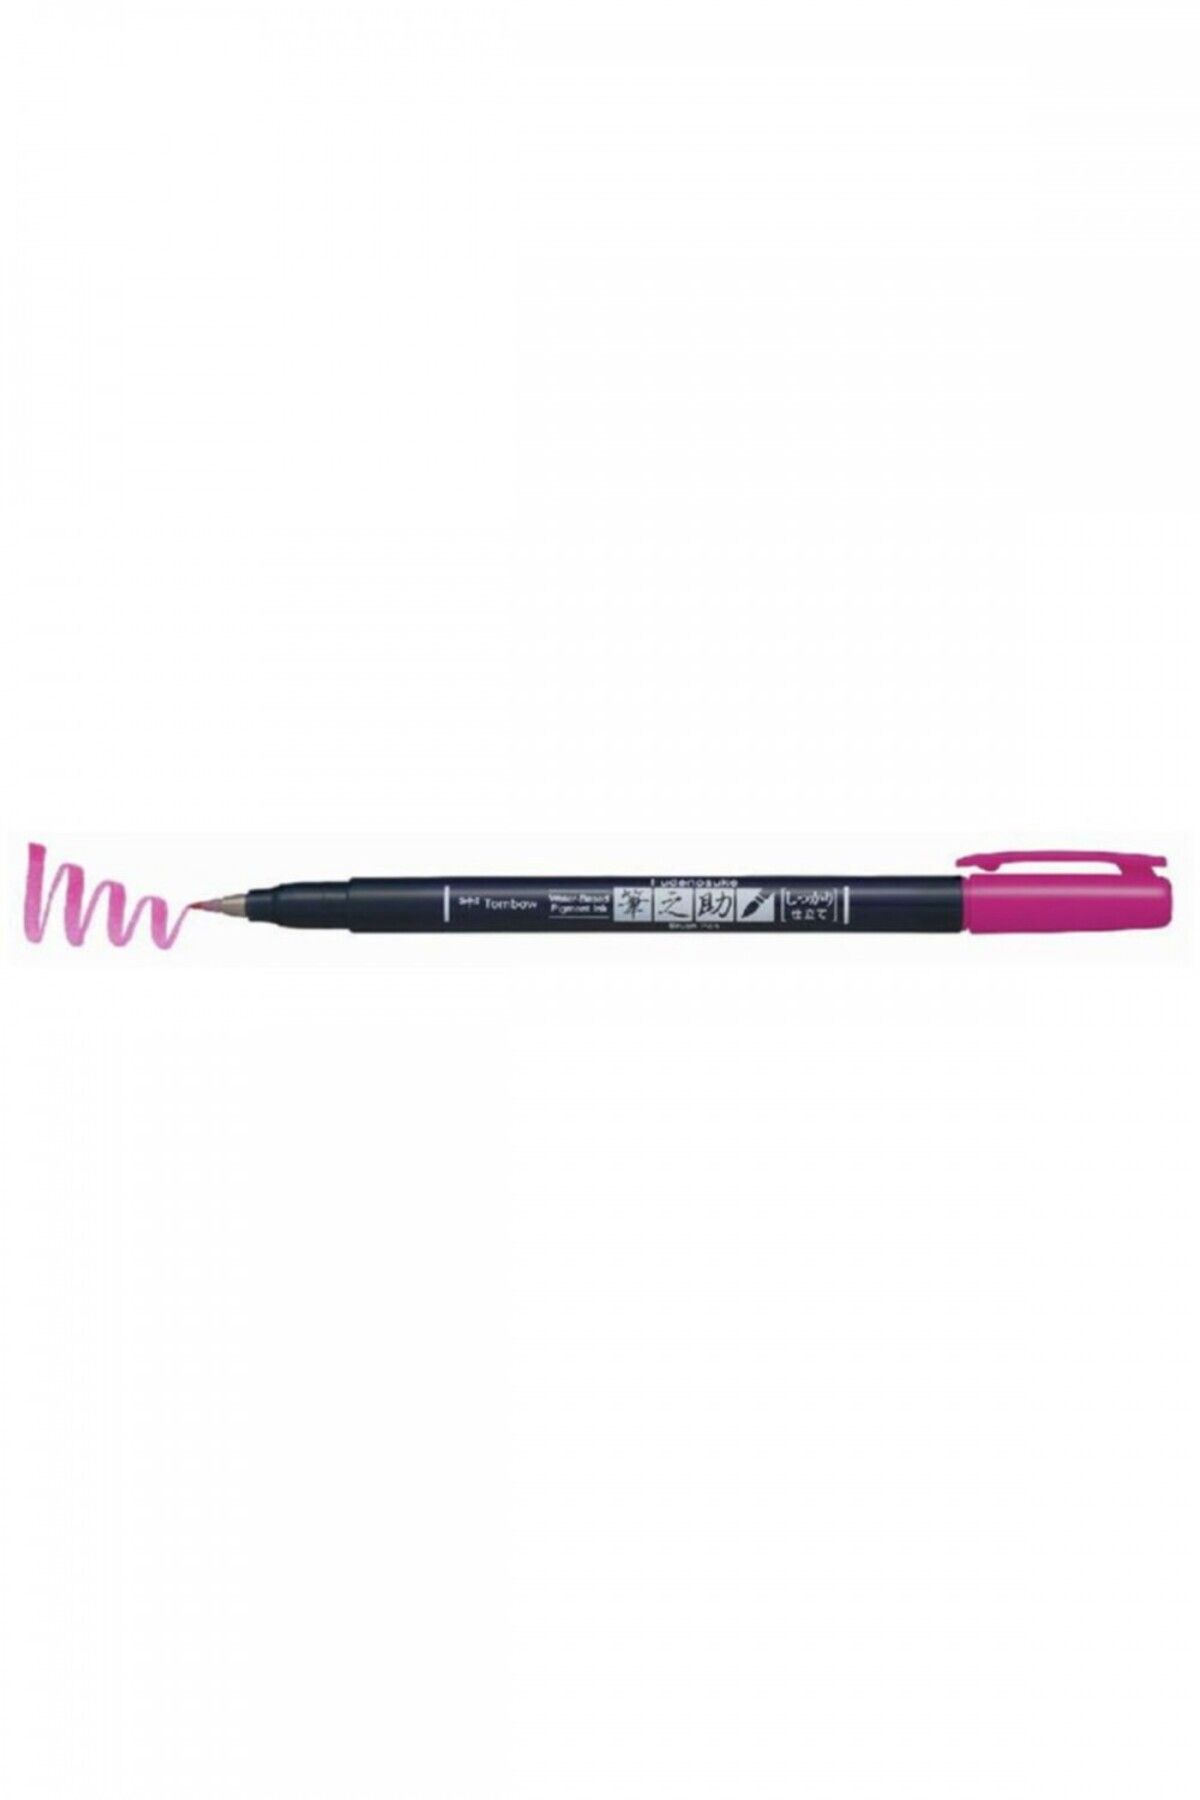 Tombow Fudenosuke Brush Pen Fırça Uçlu Kalem Sert Uç - Pembe